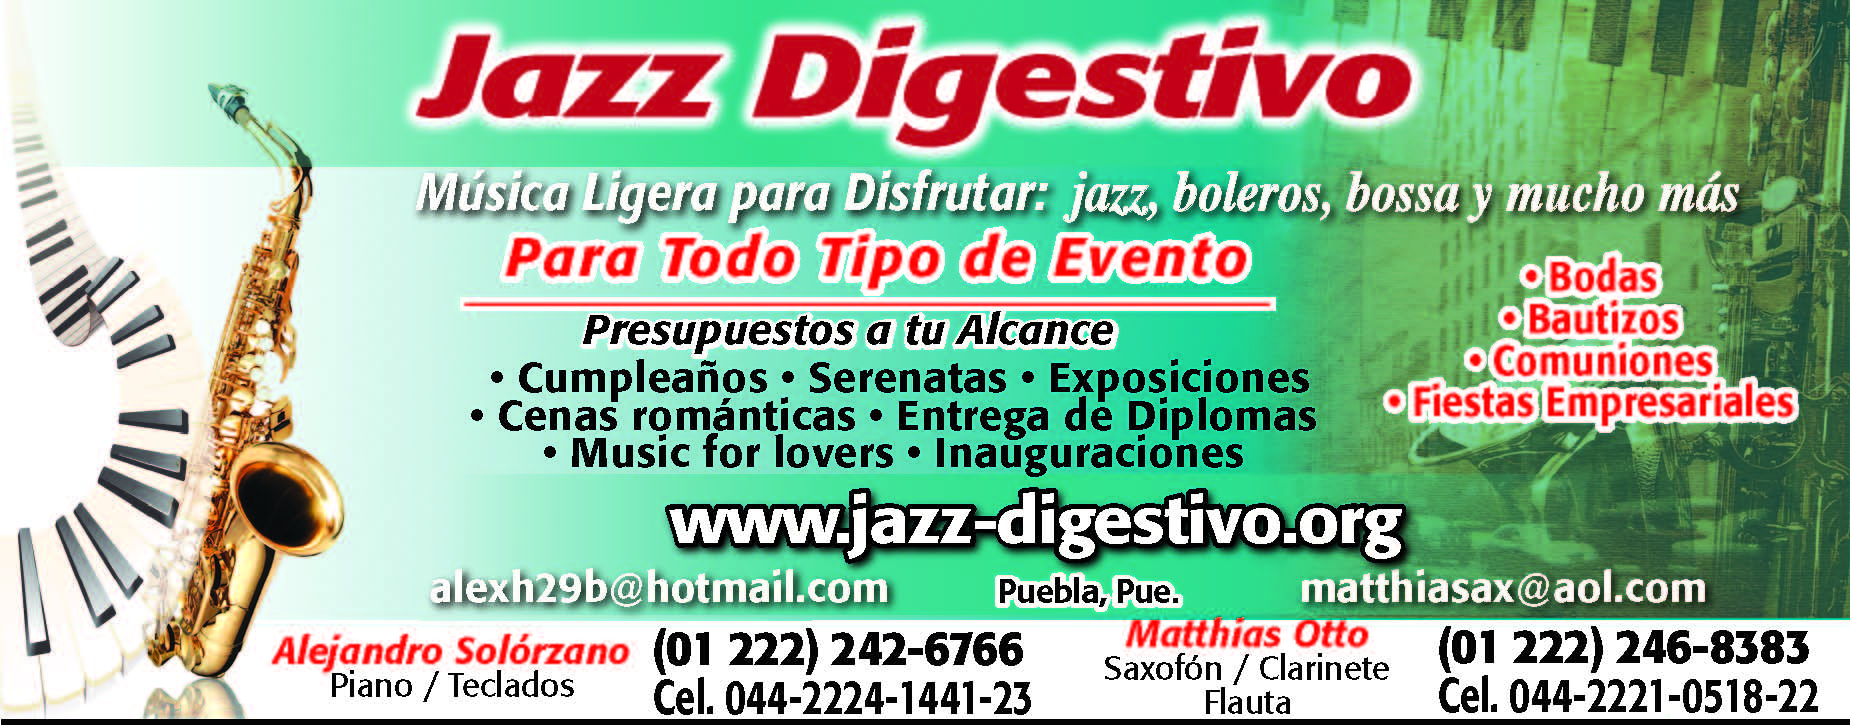 Jazz Digestivo en Sección Amarilla -- www.jazz-digestivo.org